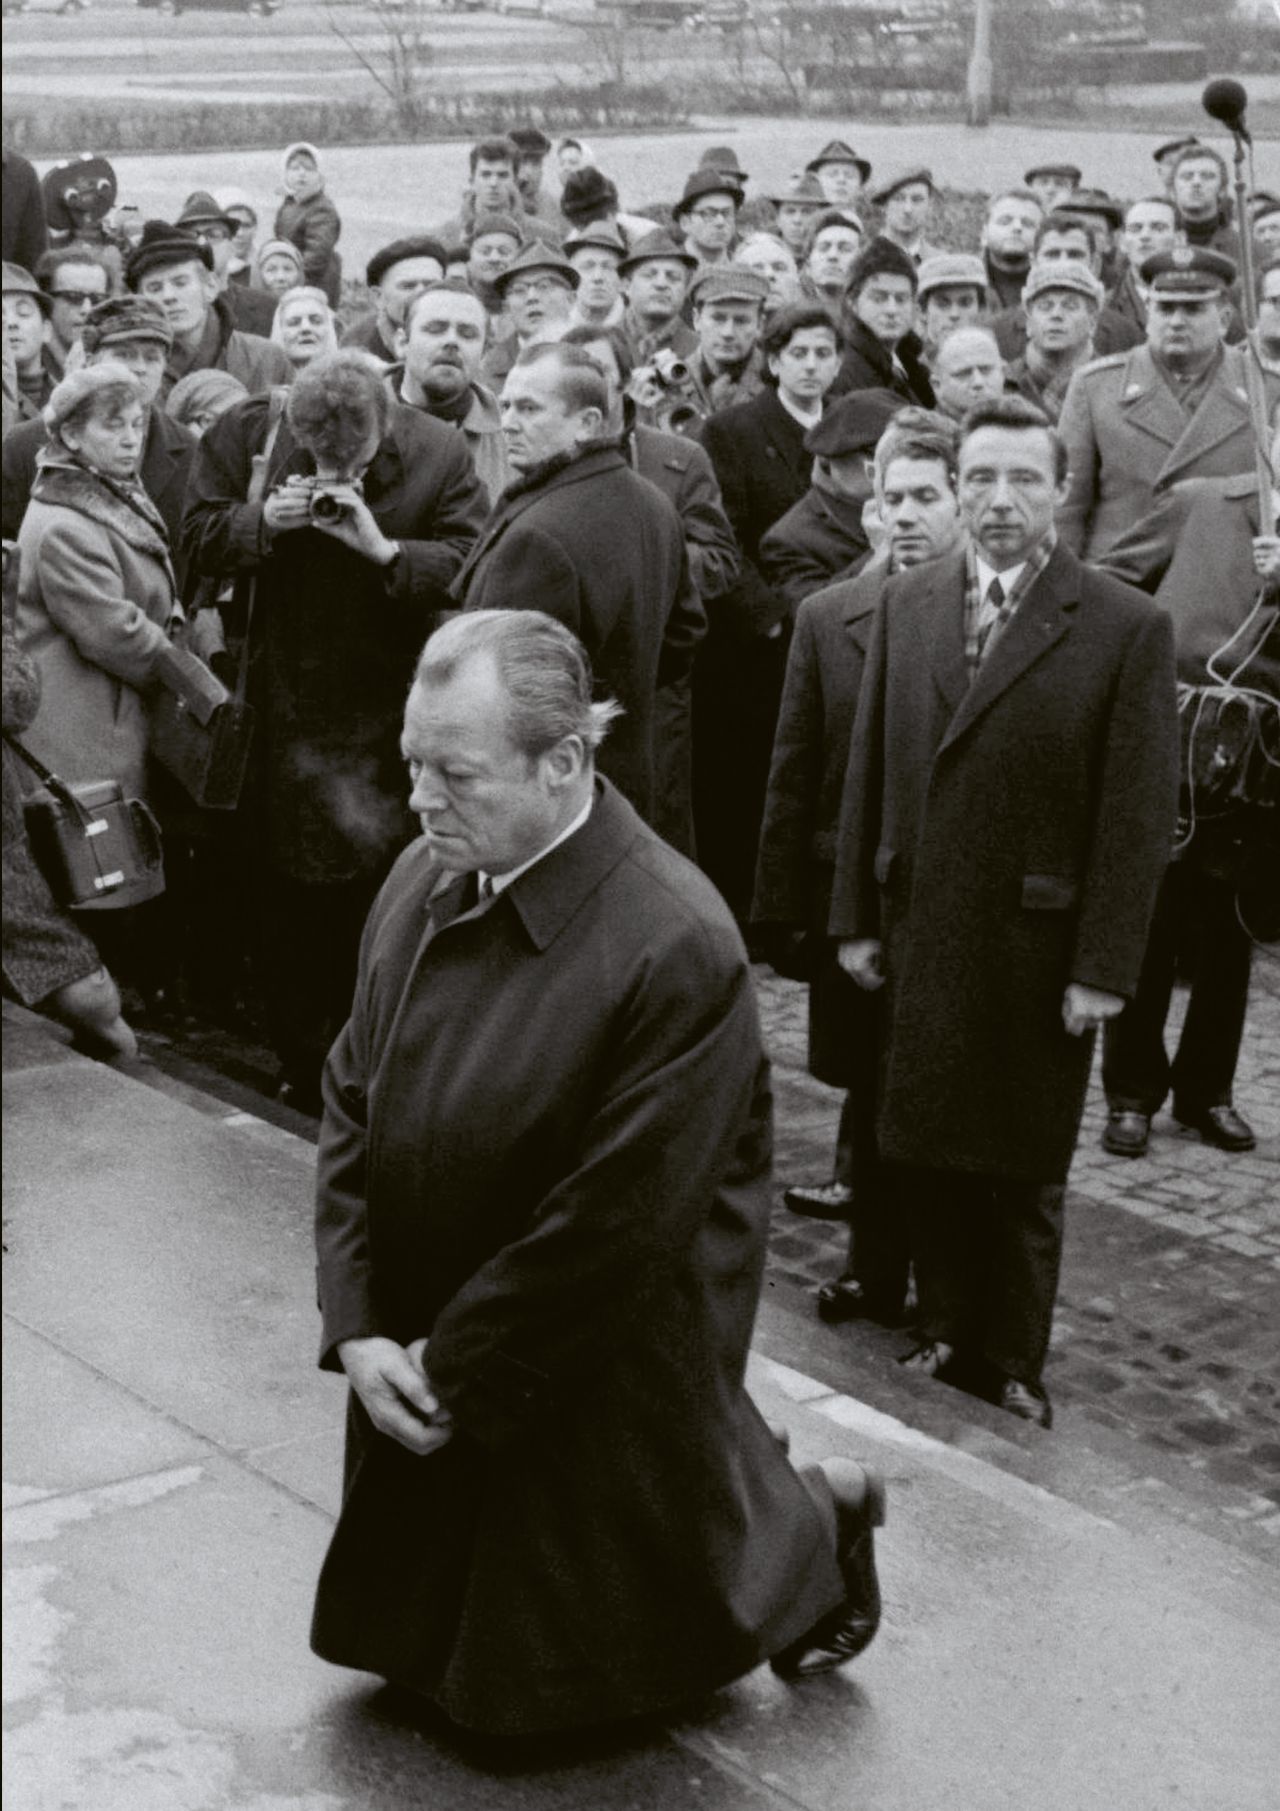 Schwarzweiß-Foto. Willy Brandt auf Steinplatten kniend, Hände vor sich übereinander gelegt,  mit gesenktem Blick. Hinter ihm, etwas tiefer, auf Pflastersteinen viele Menschen. Mann in der ersten Reihe fotografiert Brandt. Rechts ein hochgehaltenes Mikrofon. 